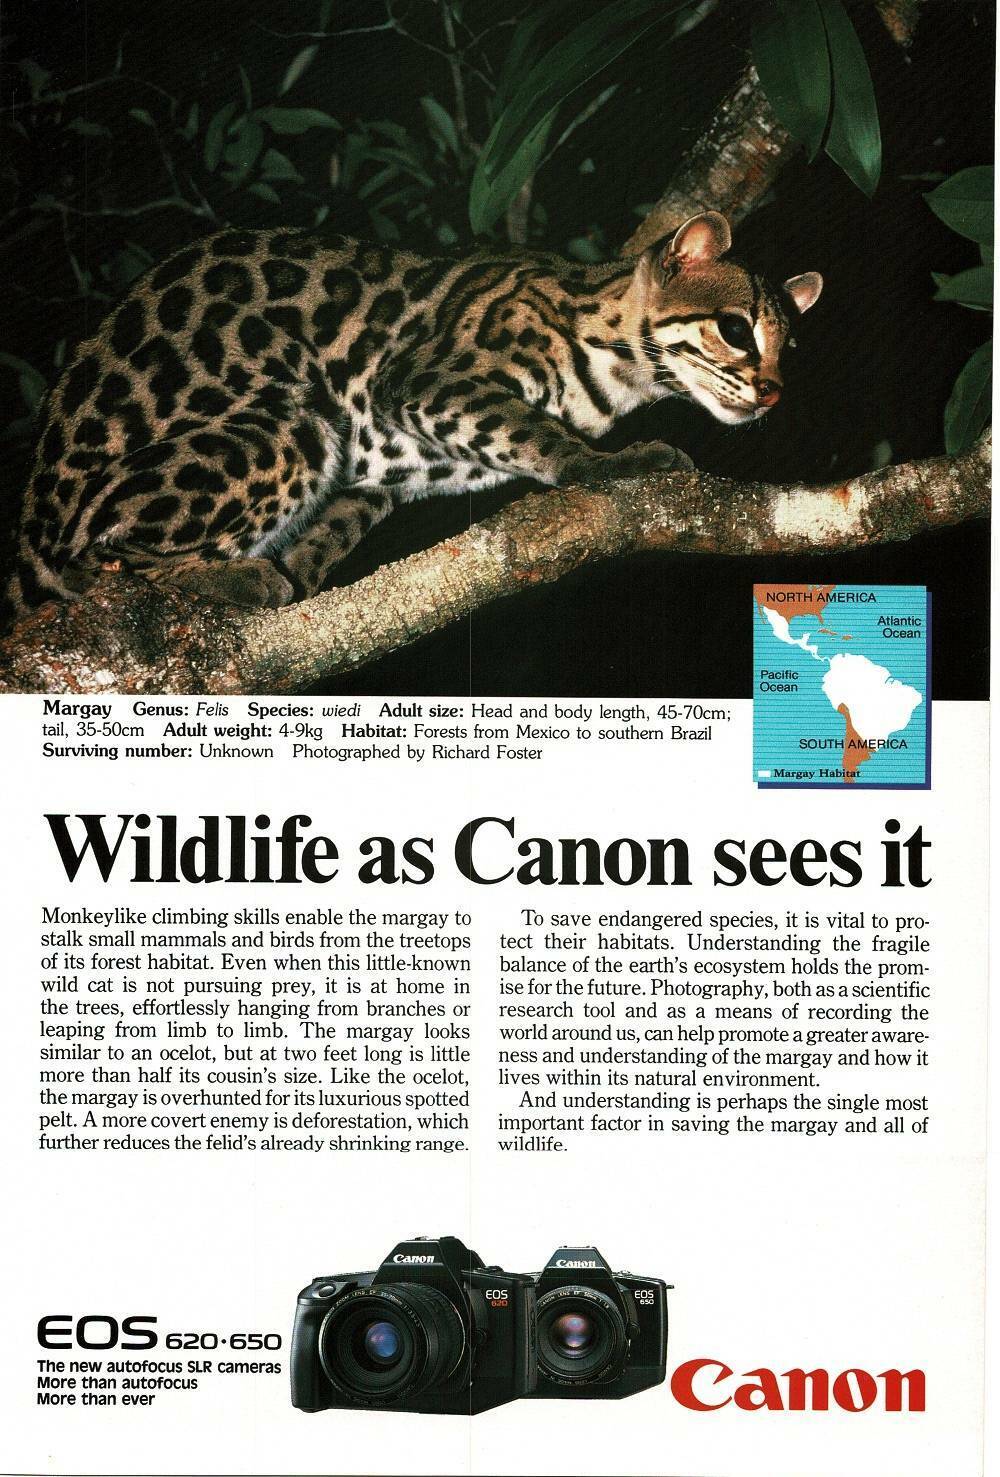 1989 Canon 620 650 Camera margay Vintage Print Ad